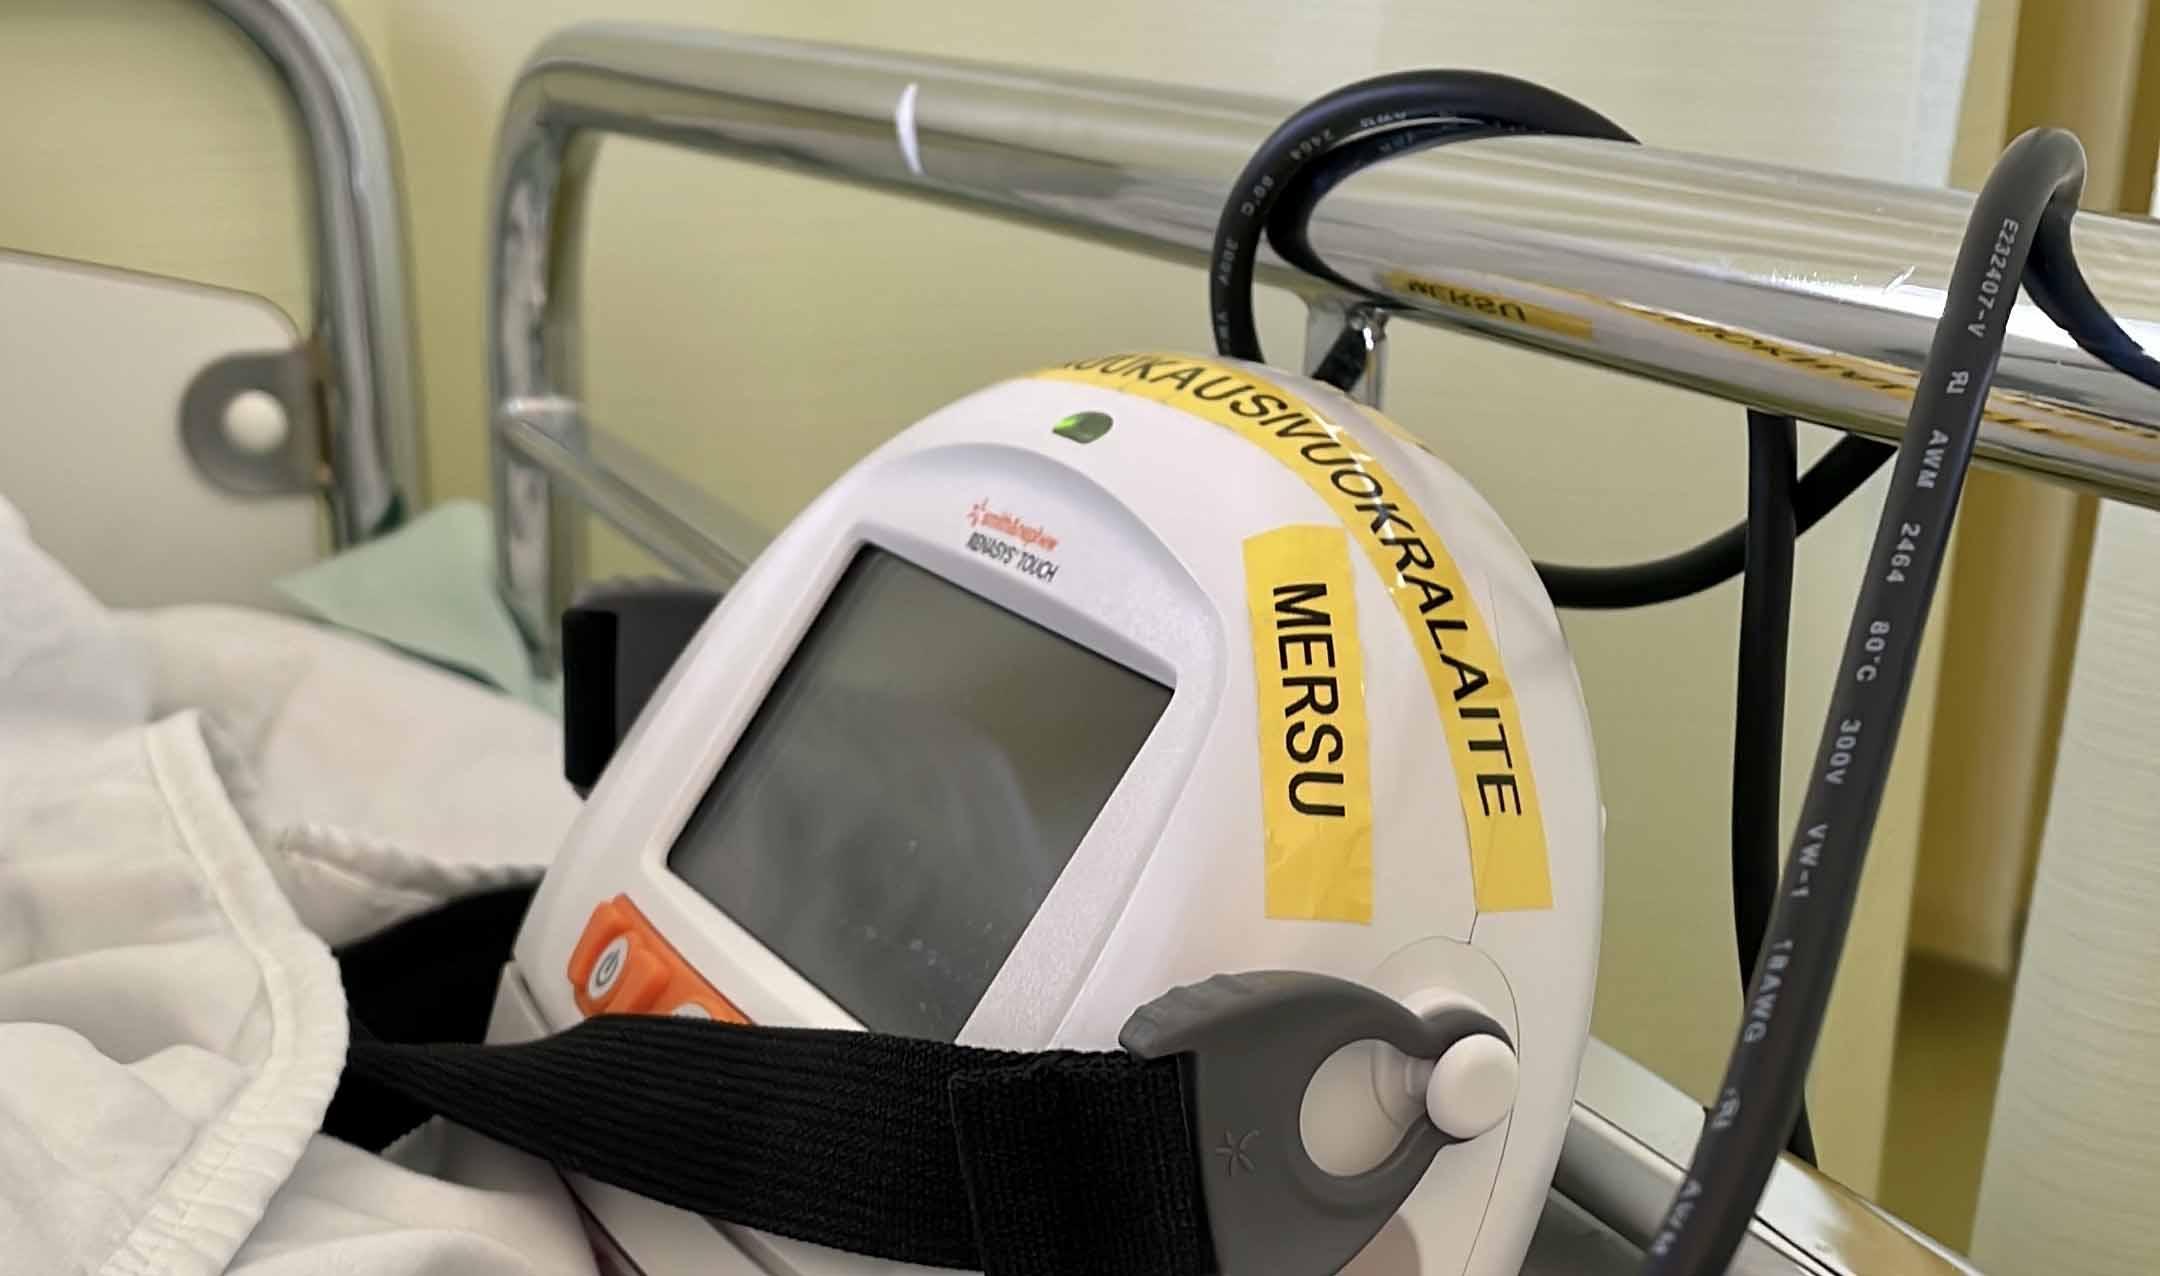 Sairaalasängyllä näkyvä valkoinen, puolipyöreä seurantalaite, jossa keltaisella tarrateipillä teksti MERSU. Takana näkyy sängyn metallipäätyä ja musta johto.